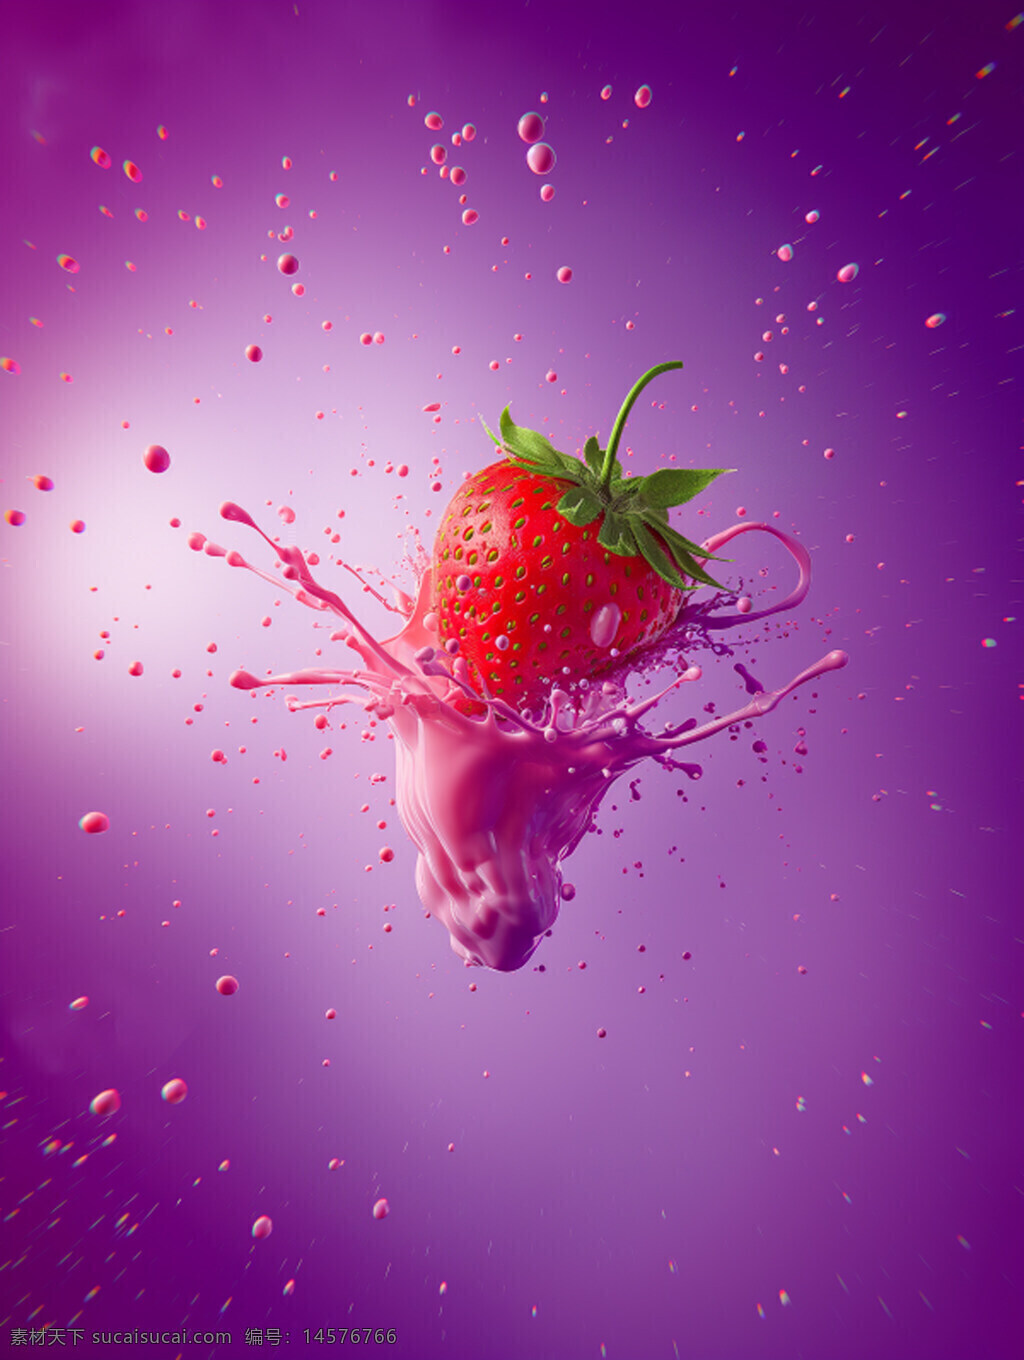 强大的液体爆炸 草莓 黑色背景 商业摄影 清新 水果草莓 草莓素材 红色草莓 小草莓